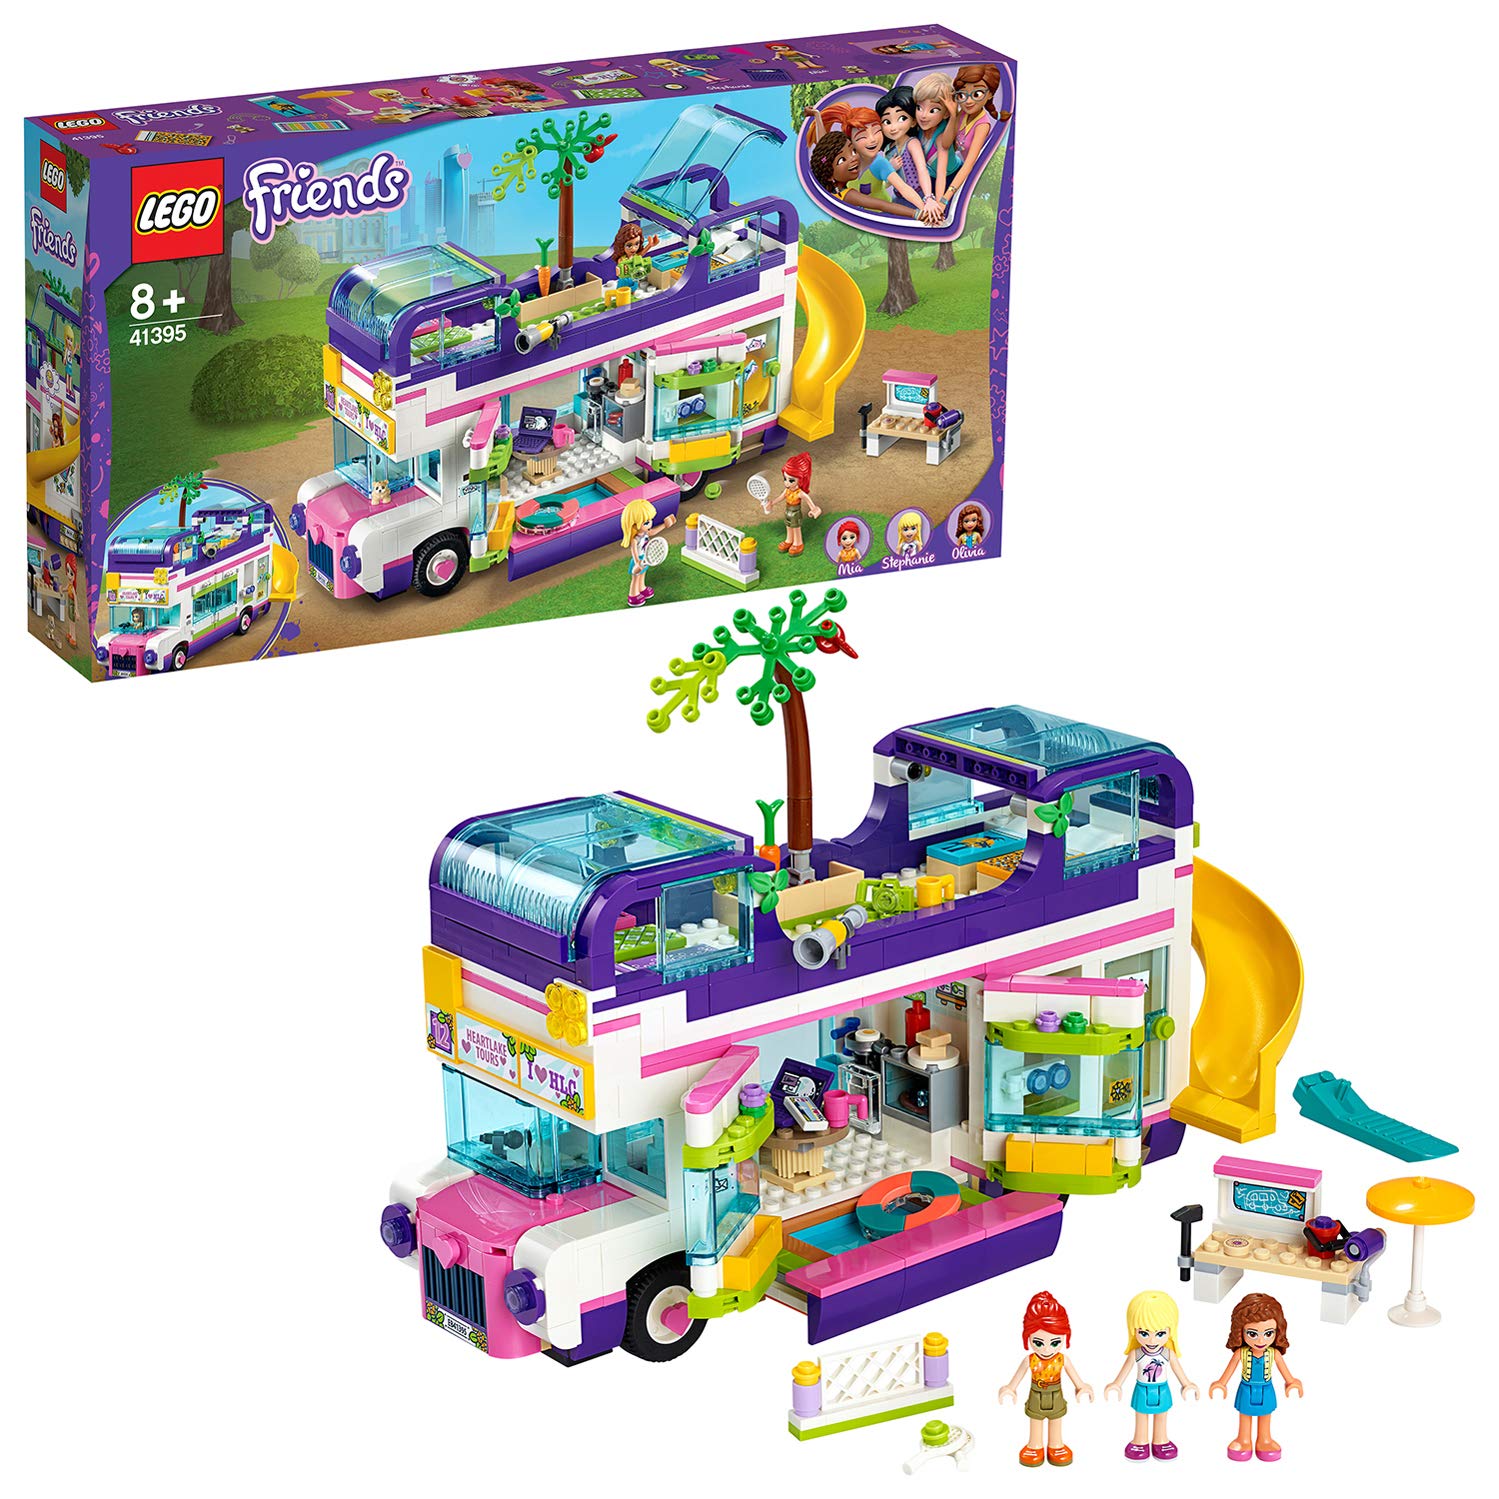 Lego 41395 Friendship Bus, Friends, Building Set